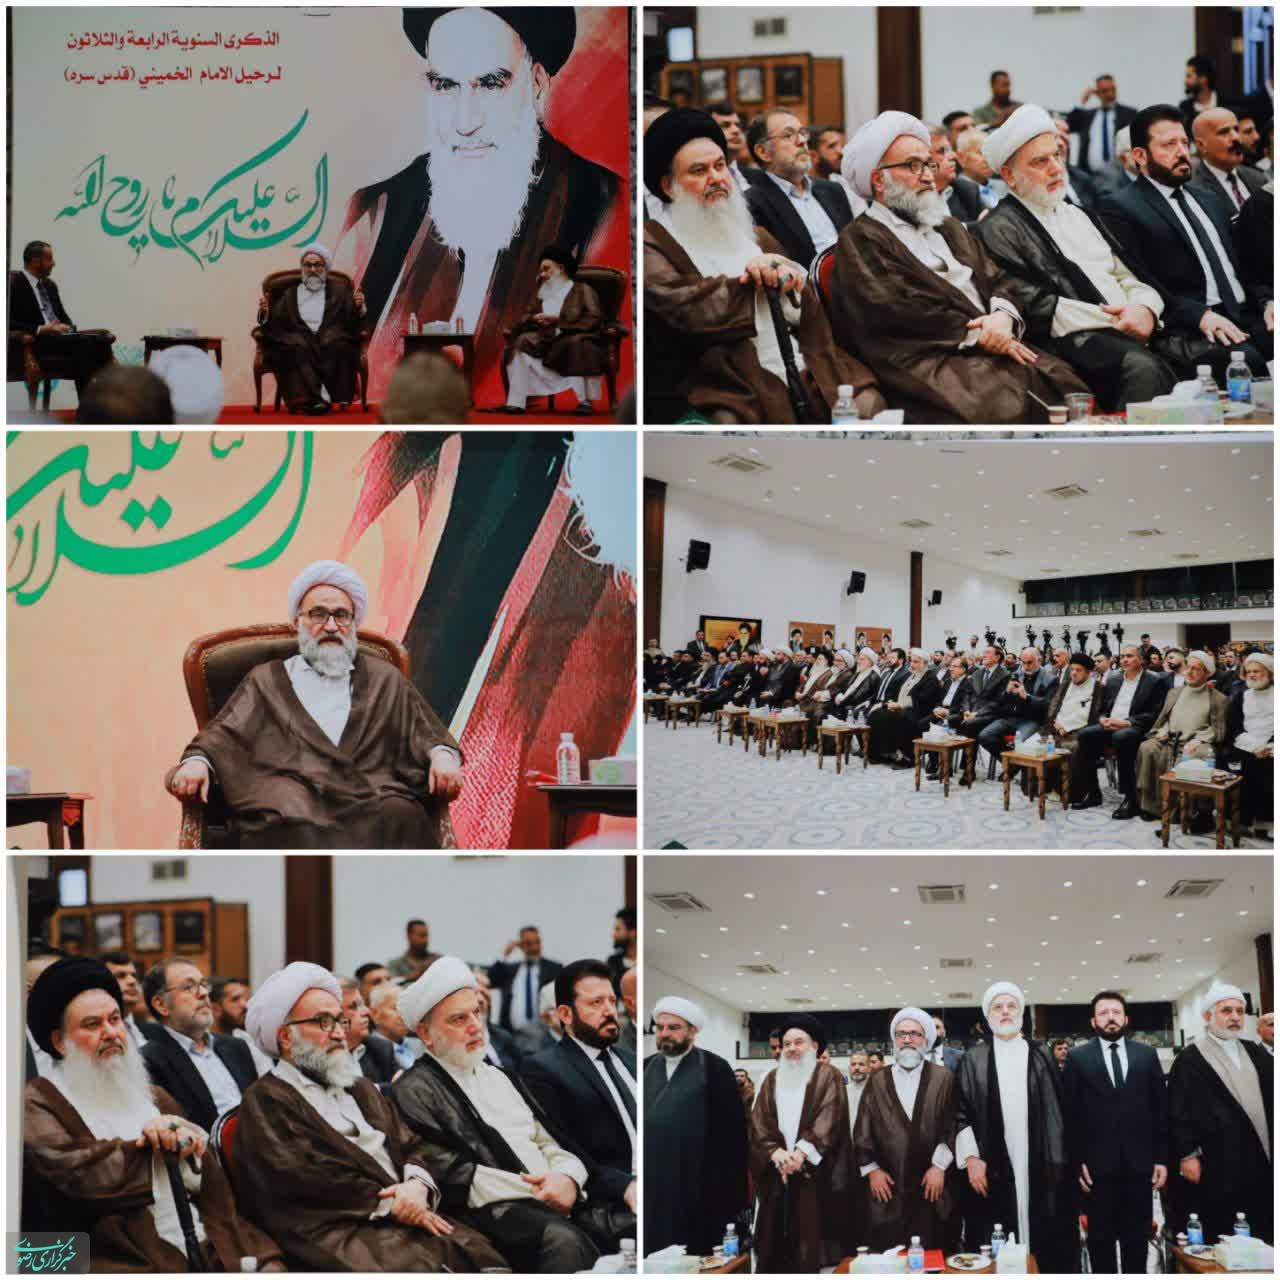 نهضت امام خمینی (ره)، اسلام اصیل را در تمام دنیا احیا کرد